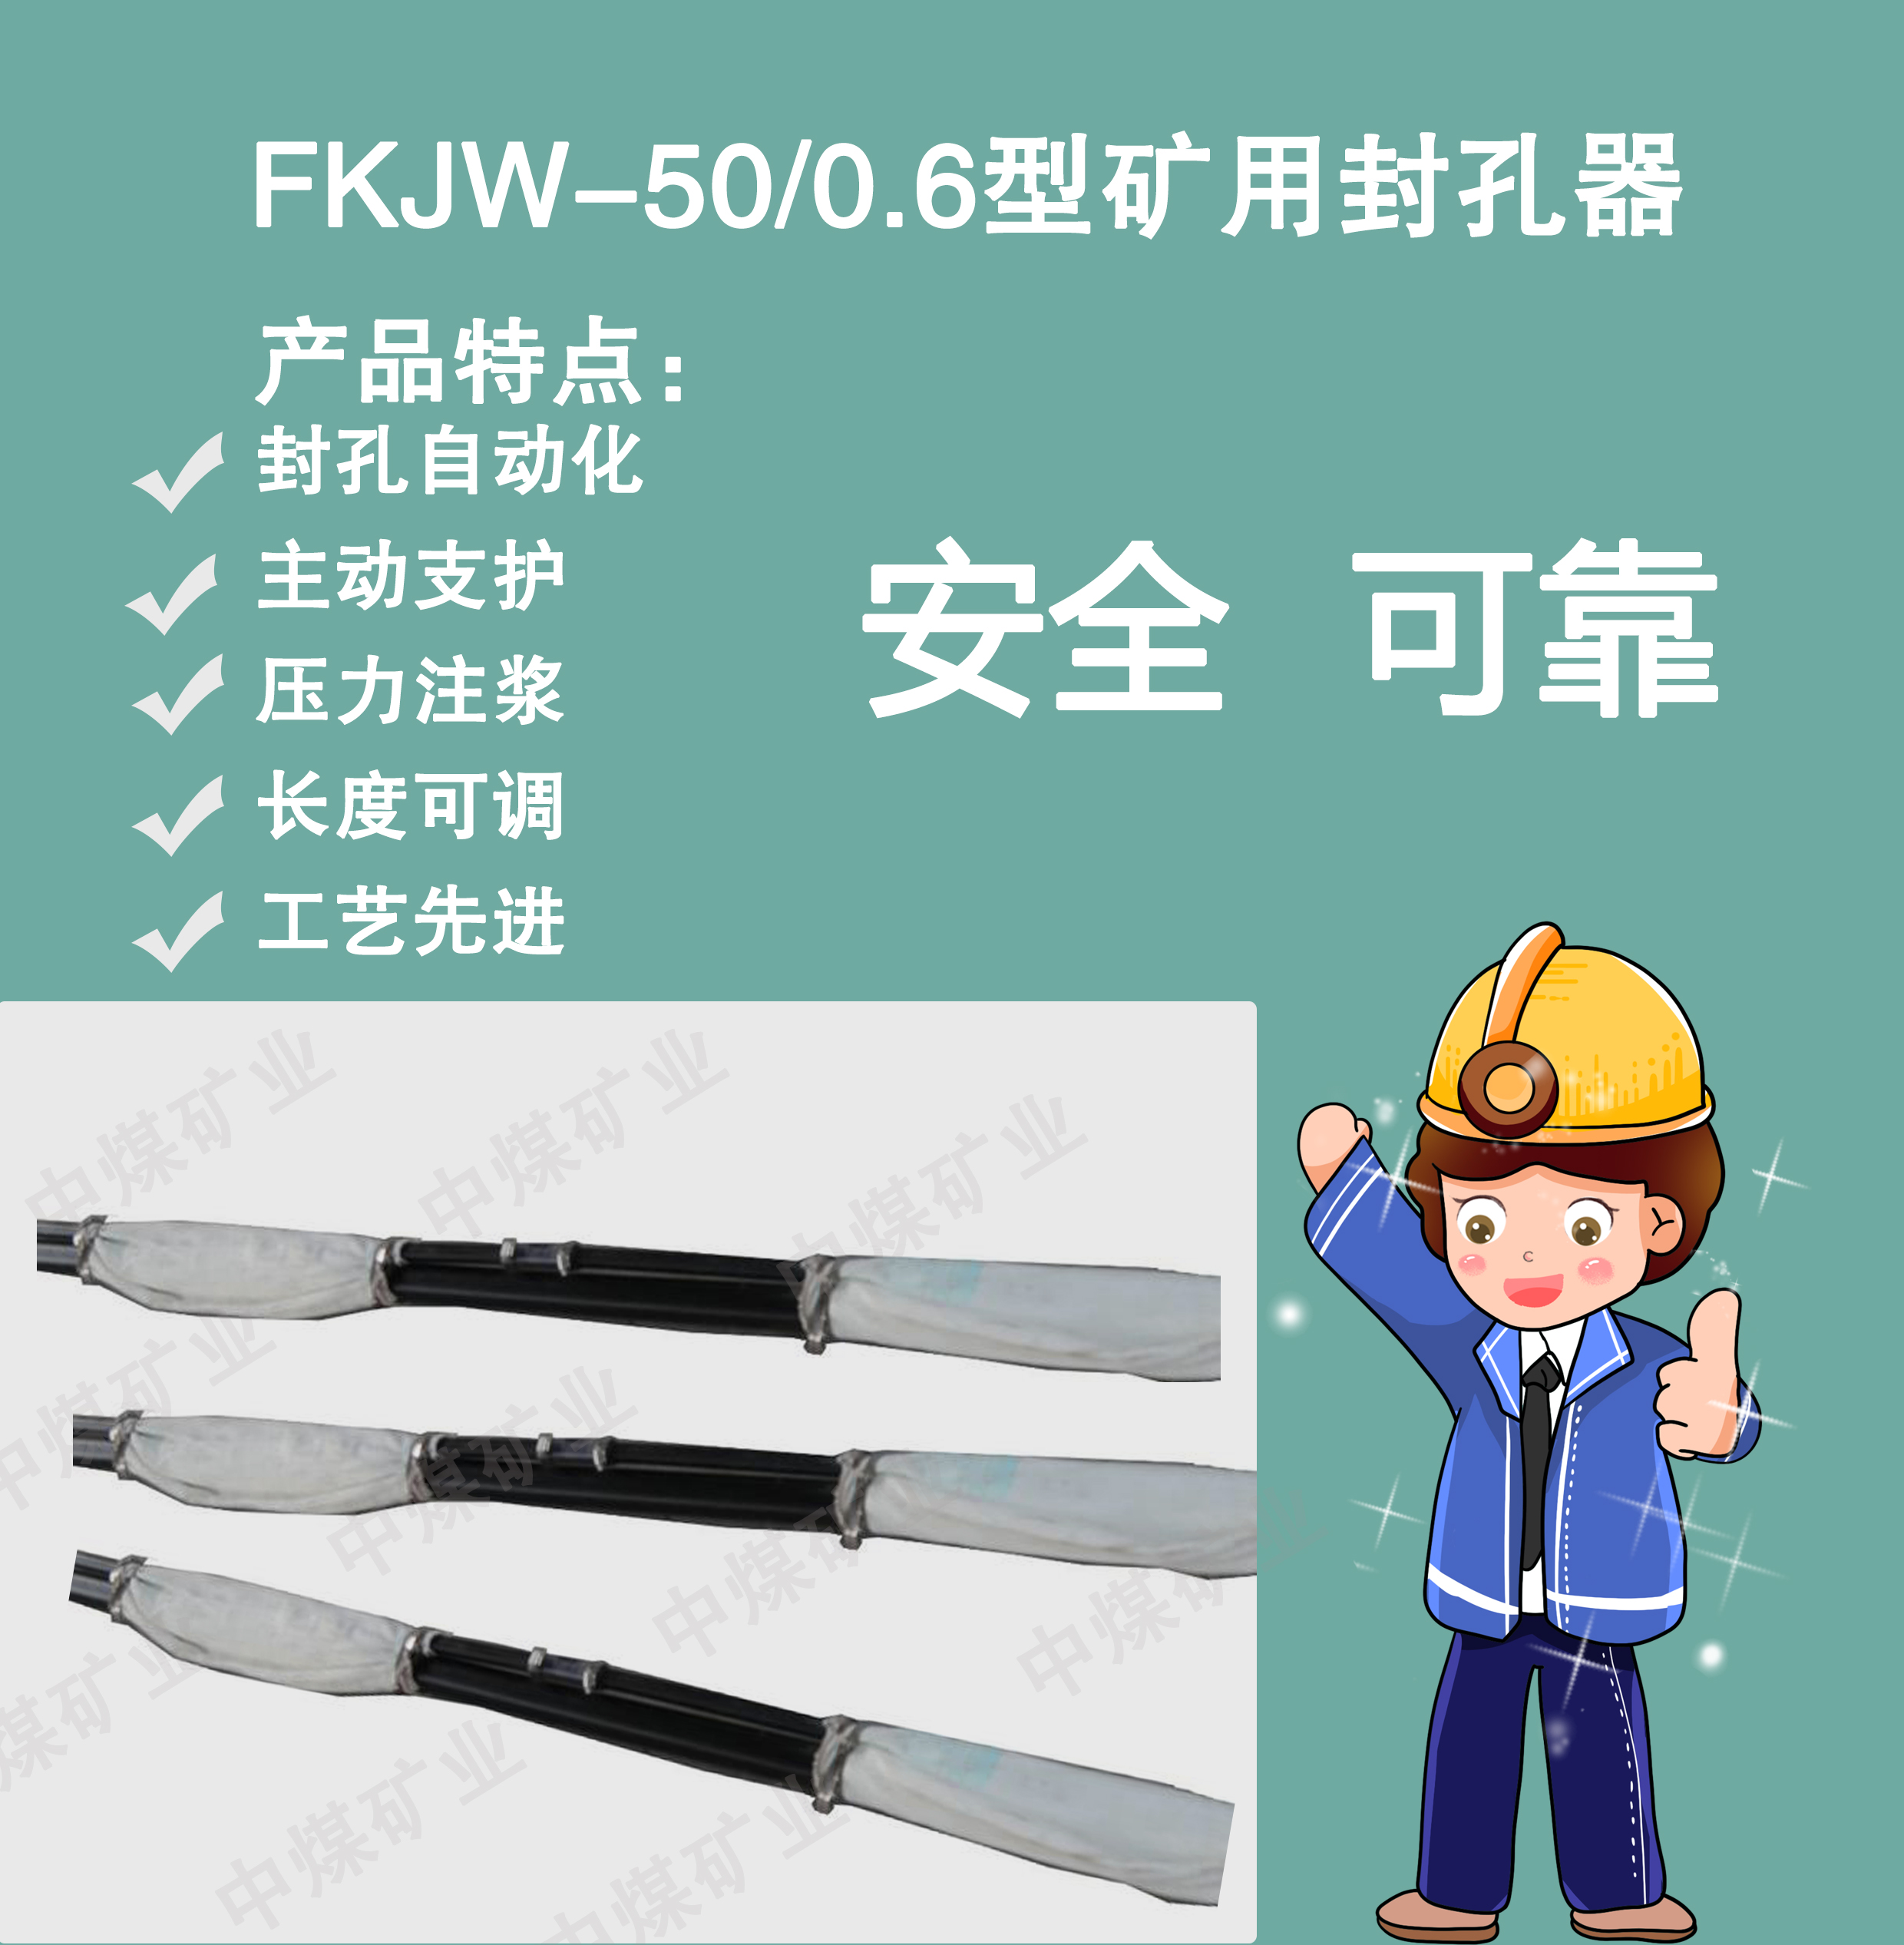 安阳市FKJW-50/0.6型矿用封孔厂家